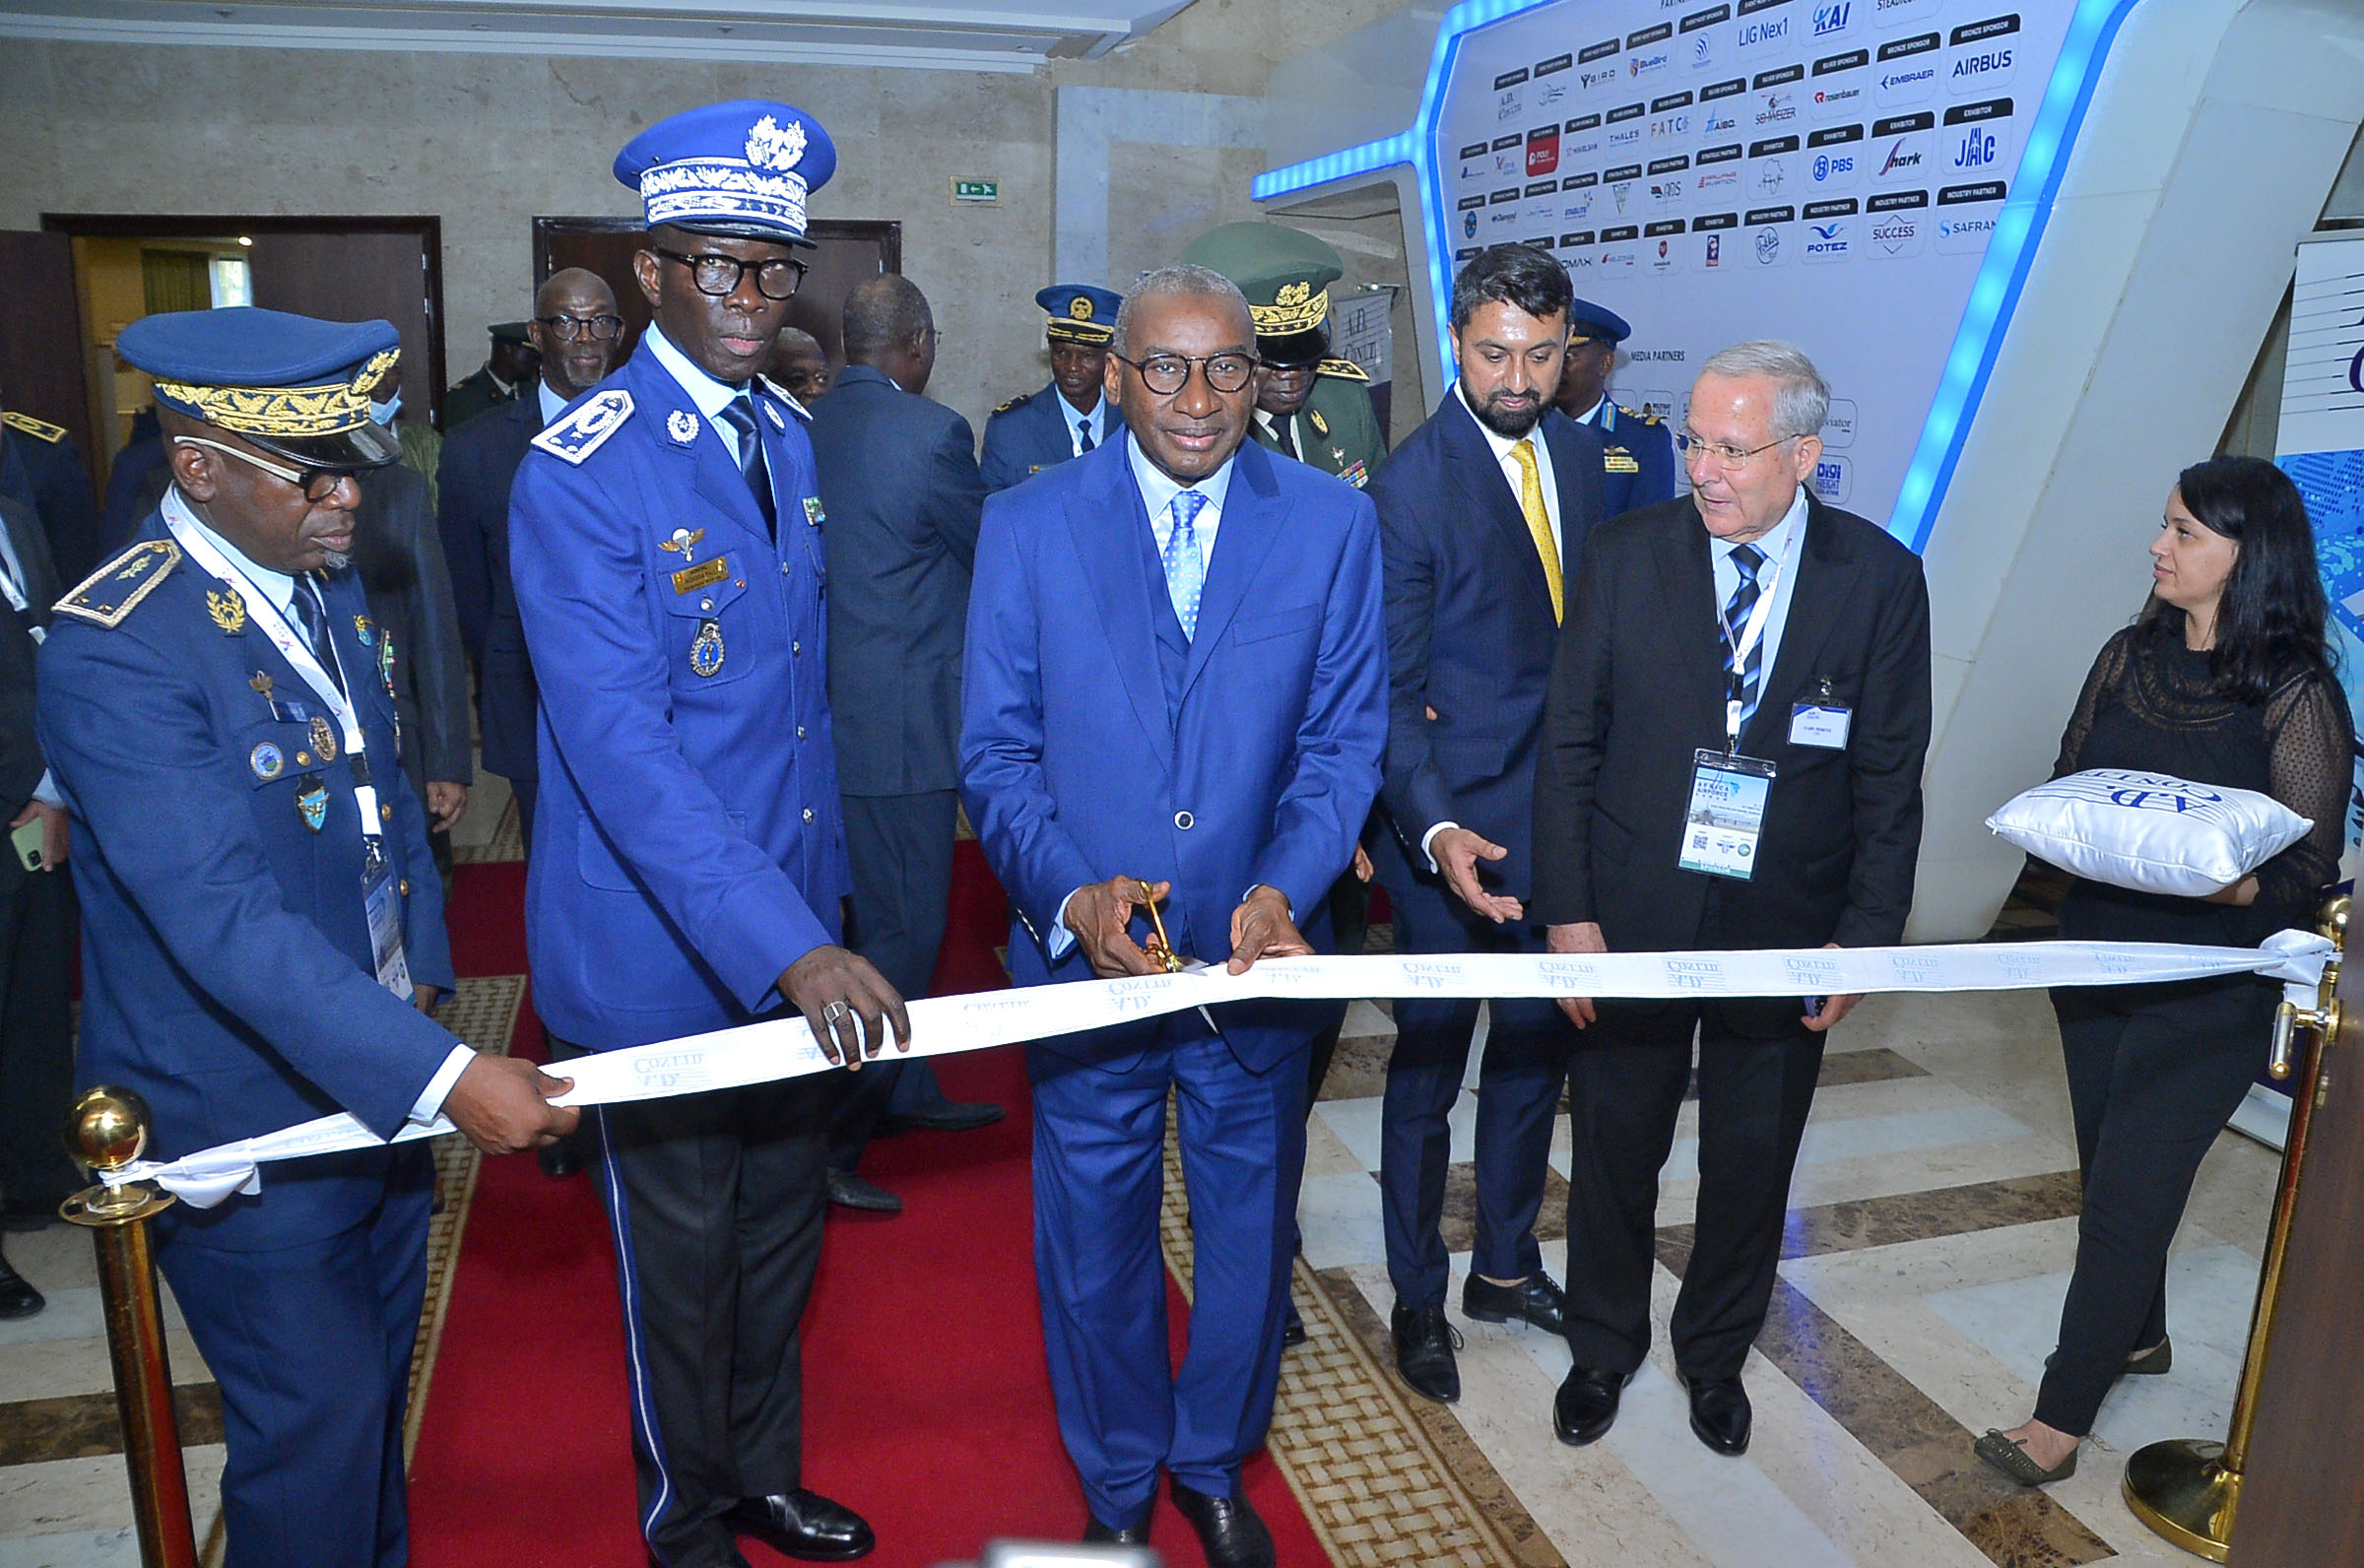 Le Forum inaugural de l’armée de l’air africaine souligne le rôle de l’armée de l’air dans le renforcement de la stabilité régionale